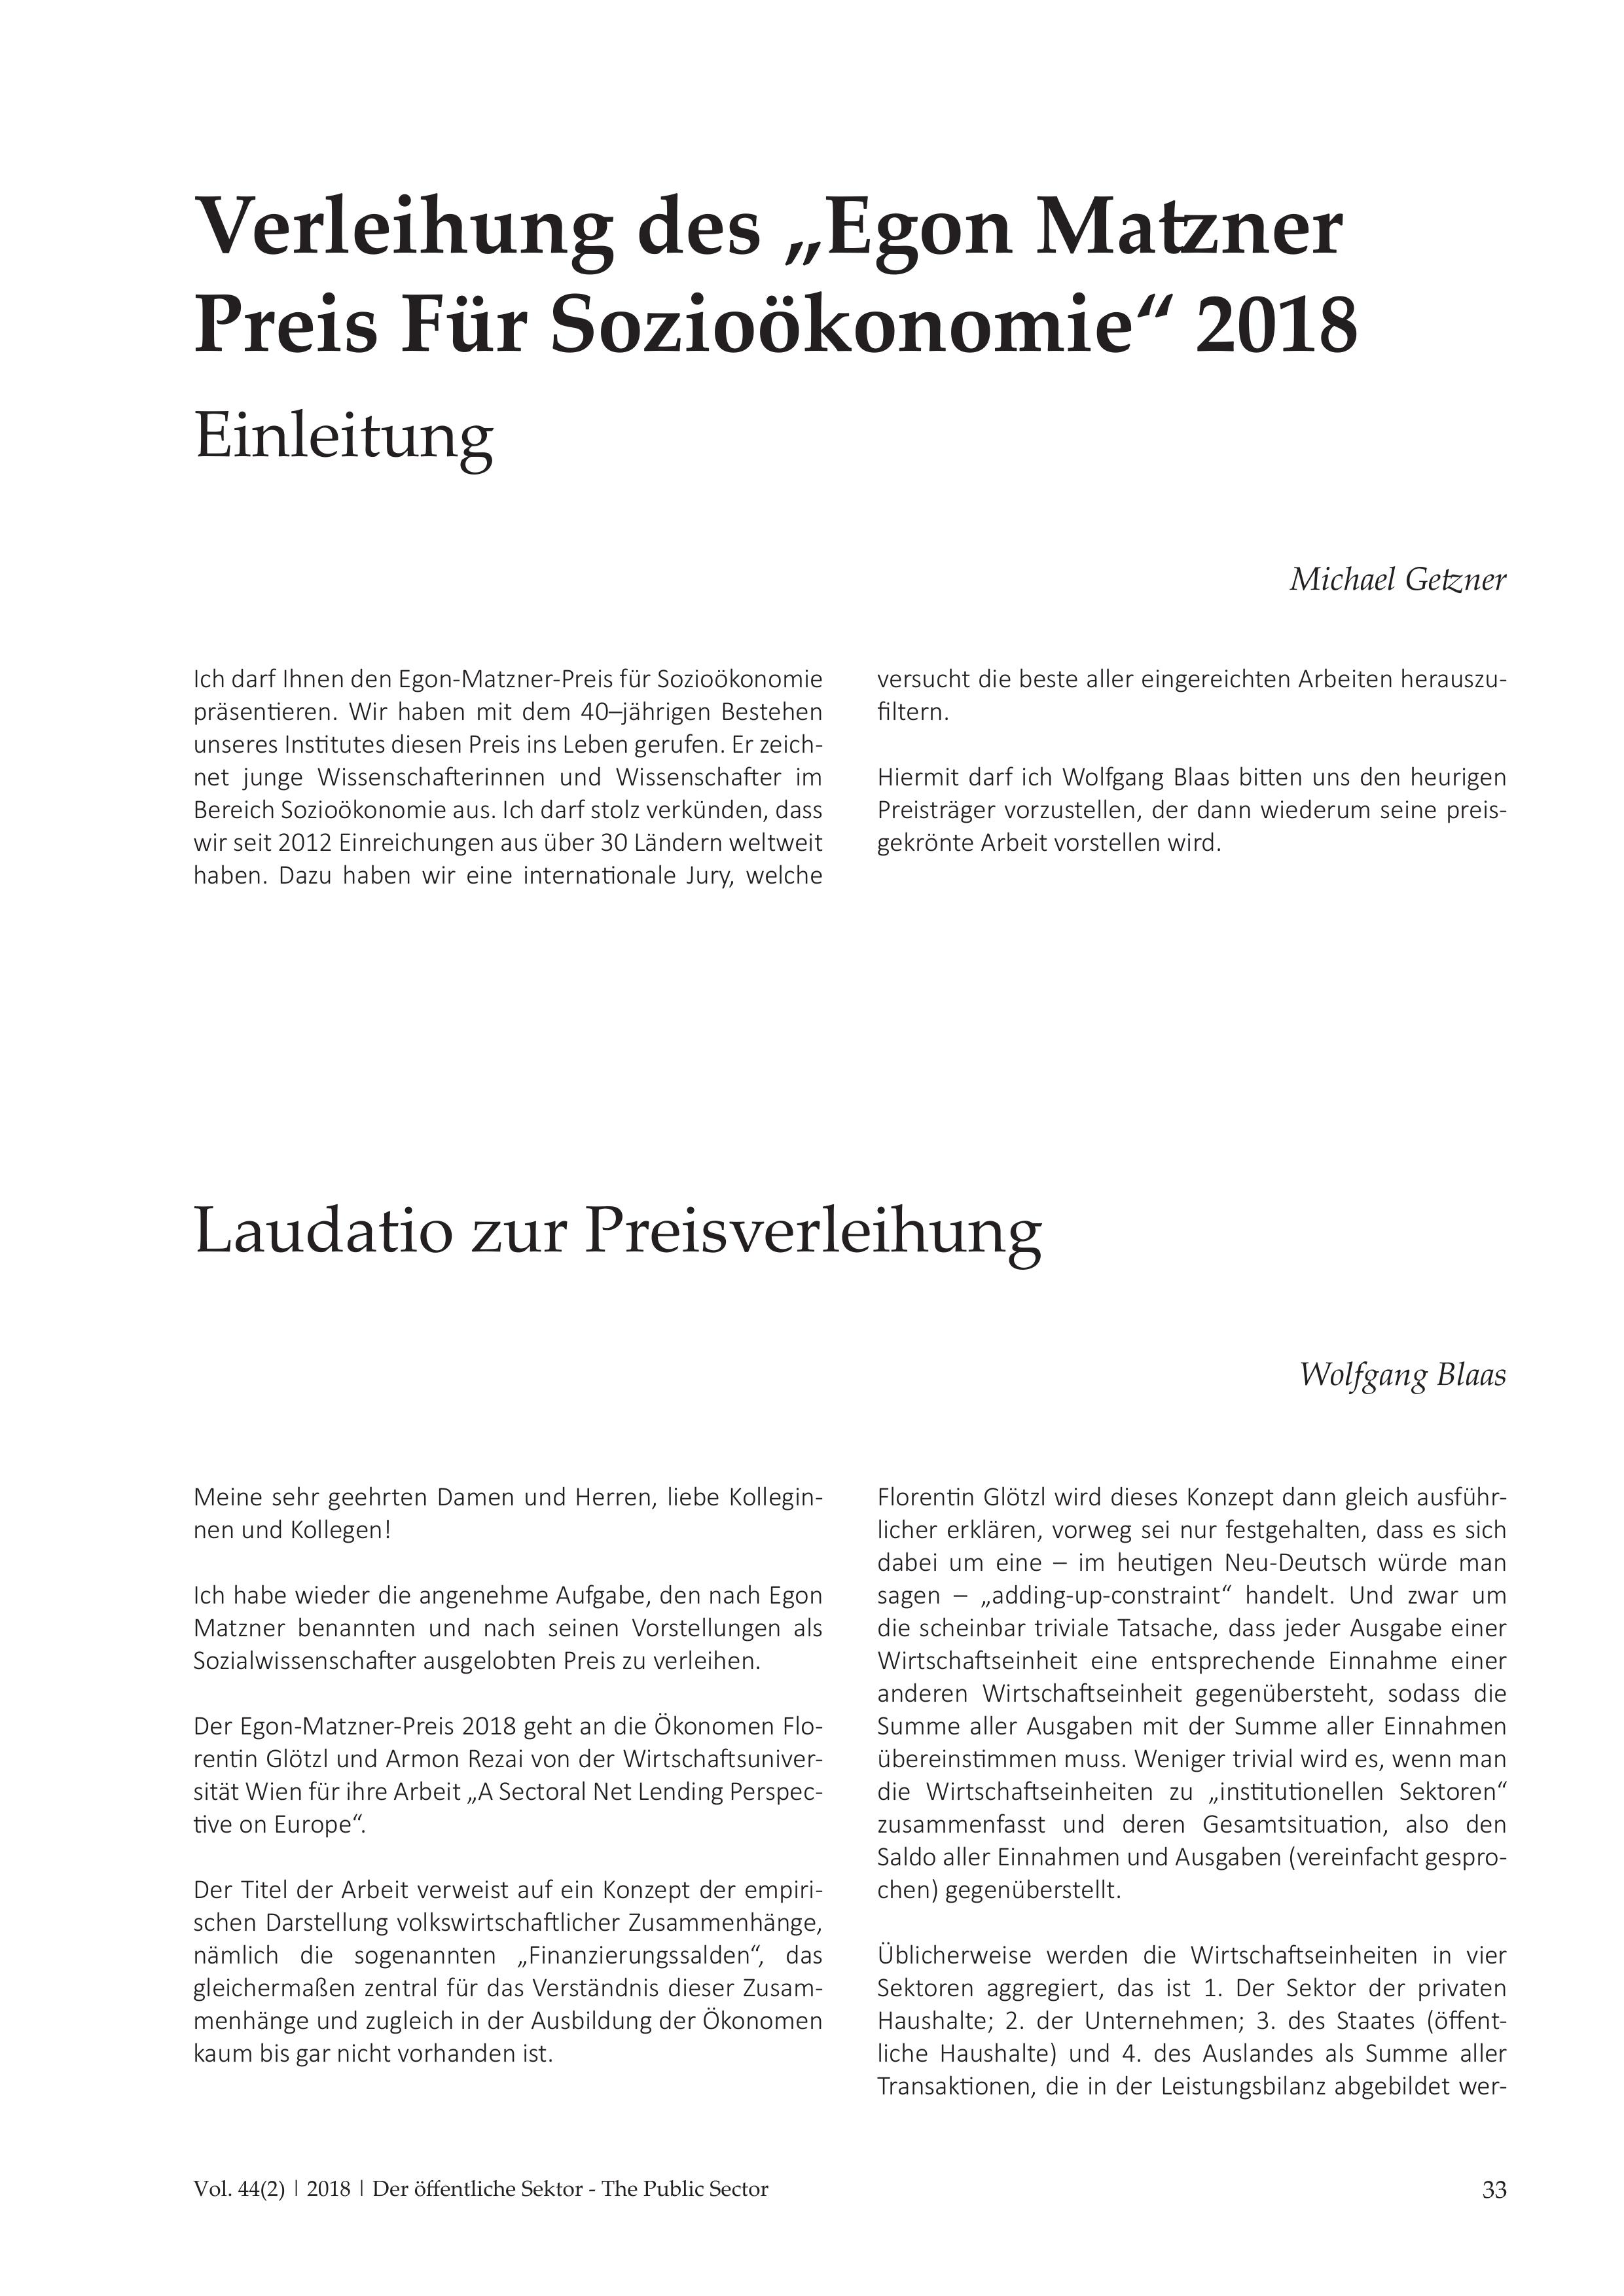 Verleihung des "Egon Matzner Preis Für Sozioökonomie" 2018